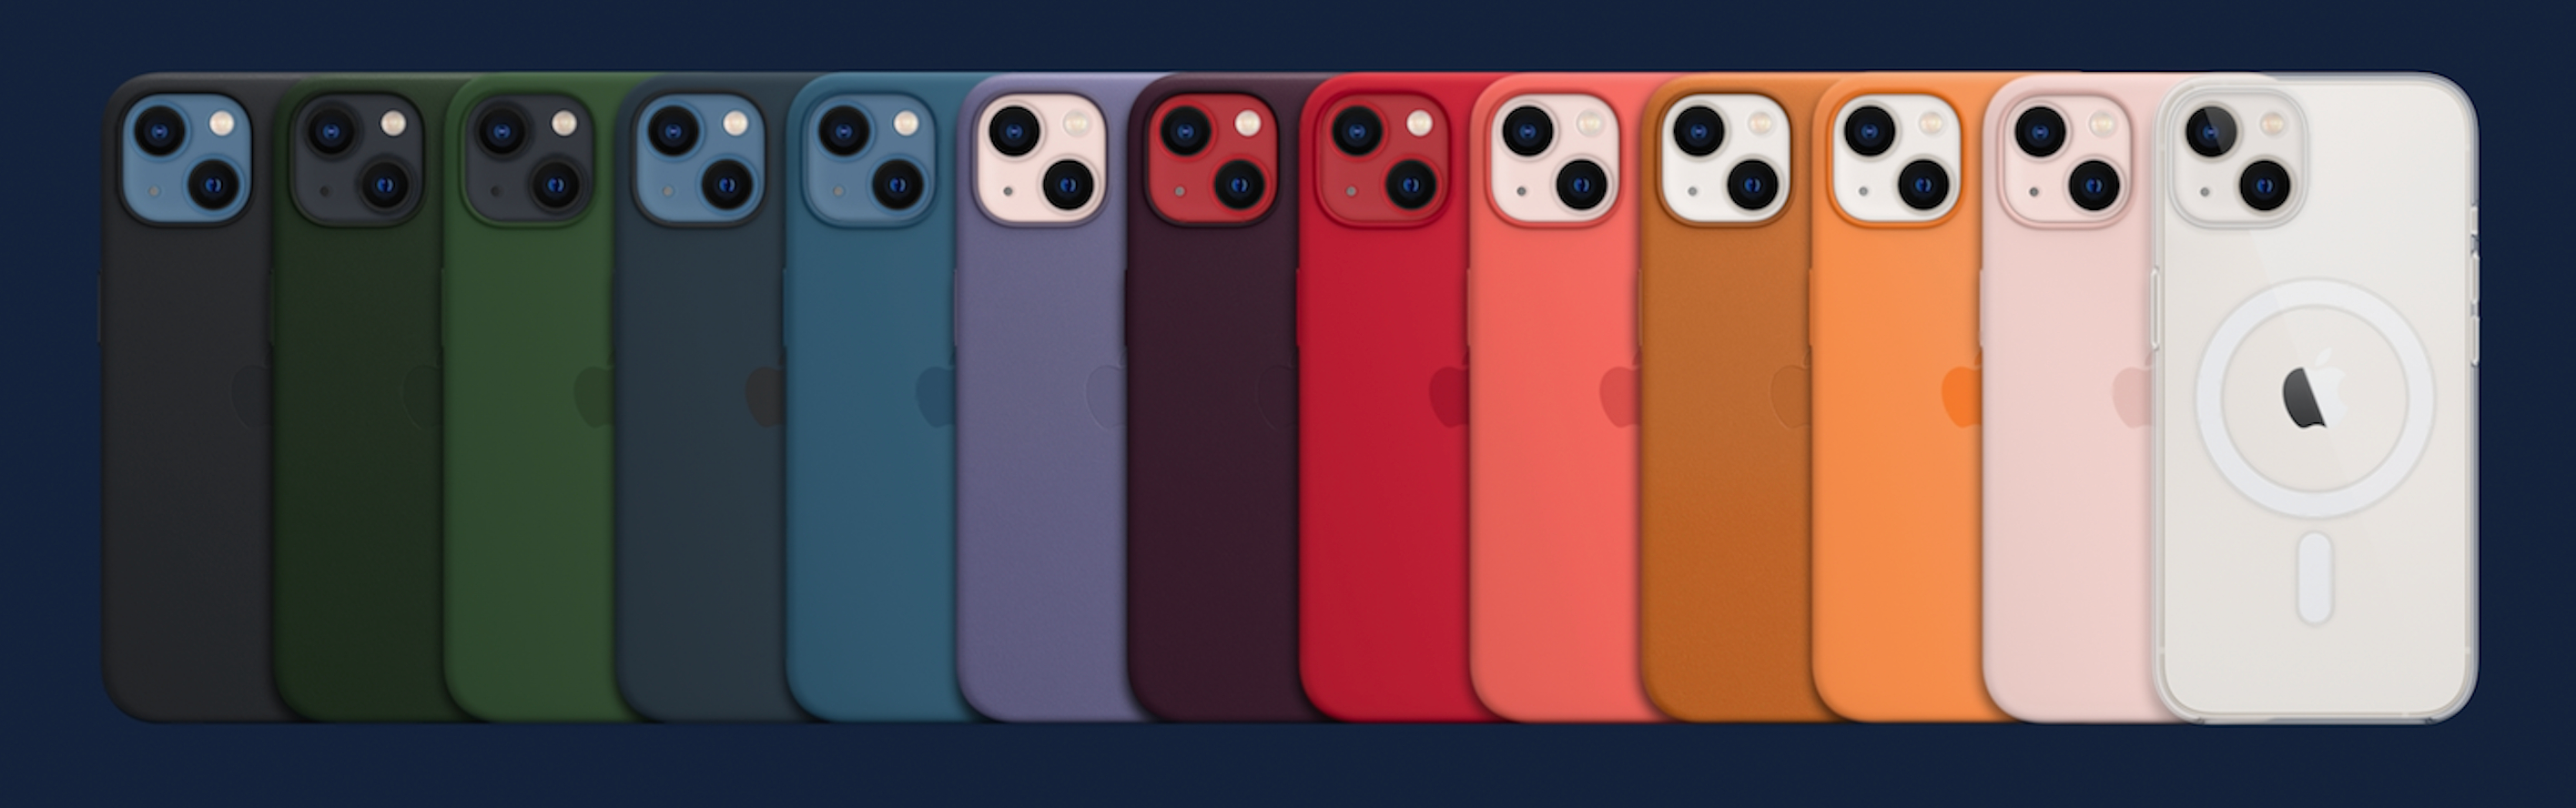 Apple Silicon Case iphone 13 Mini. Apple iphone 13 Pro чехол. Apple Silicon Case iphone 13 Pro Max. Чехол Эппл оригинальный айфон 13. Чехол iphone 15 оригинал